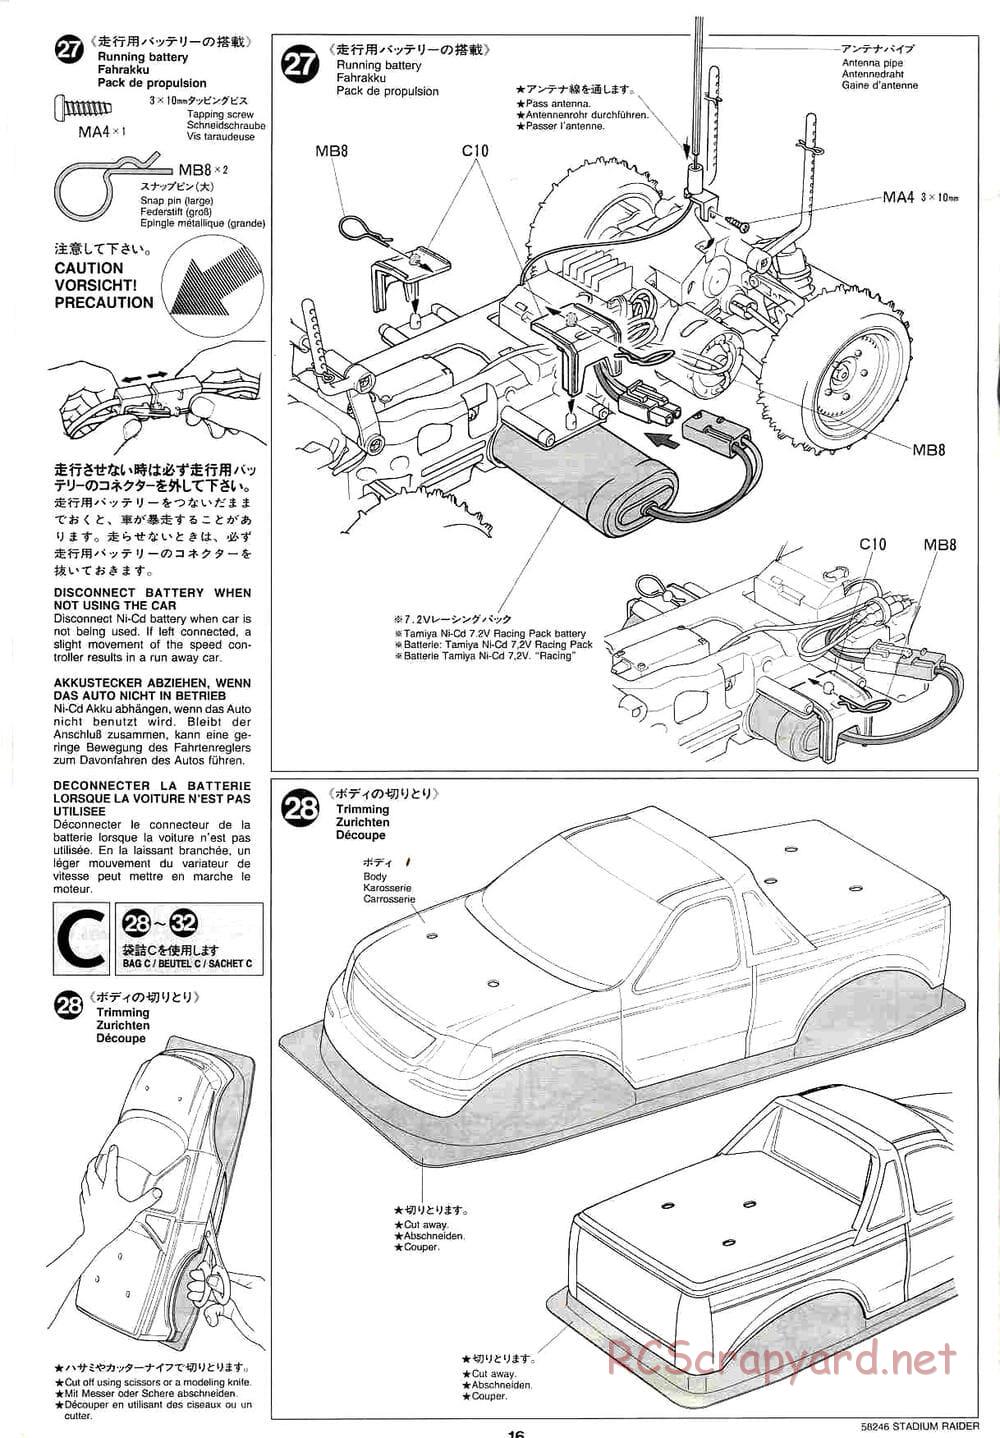 Tamiya - Stadium Raider - TL-01 Chassis - Manual - Page 16